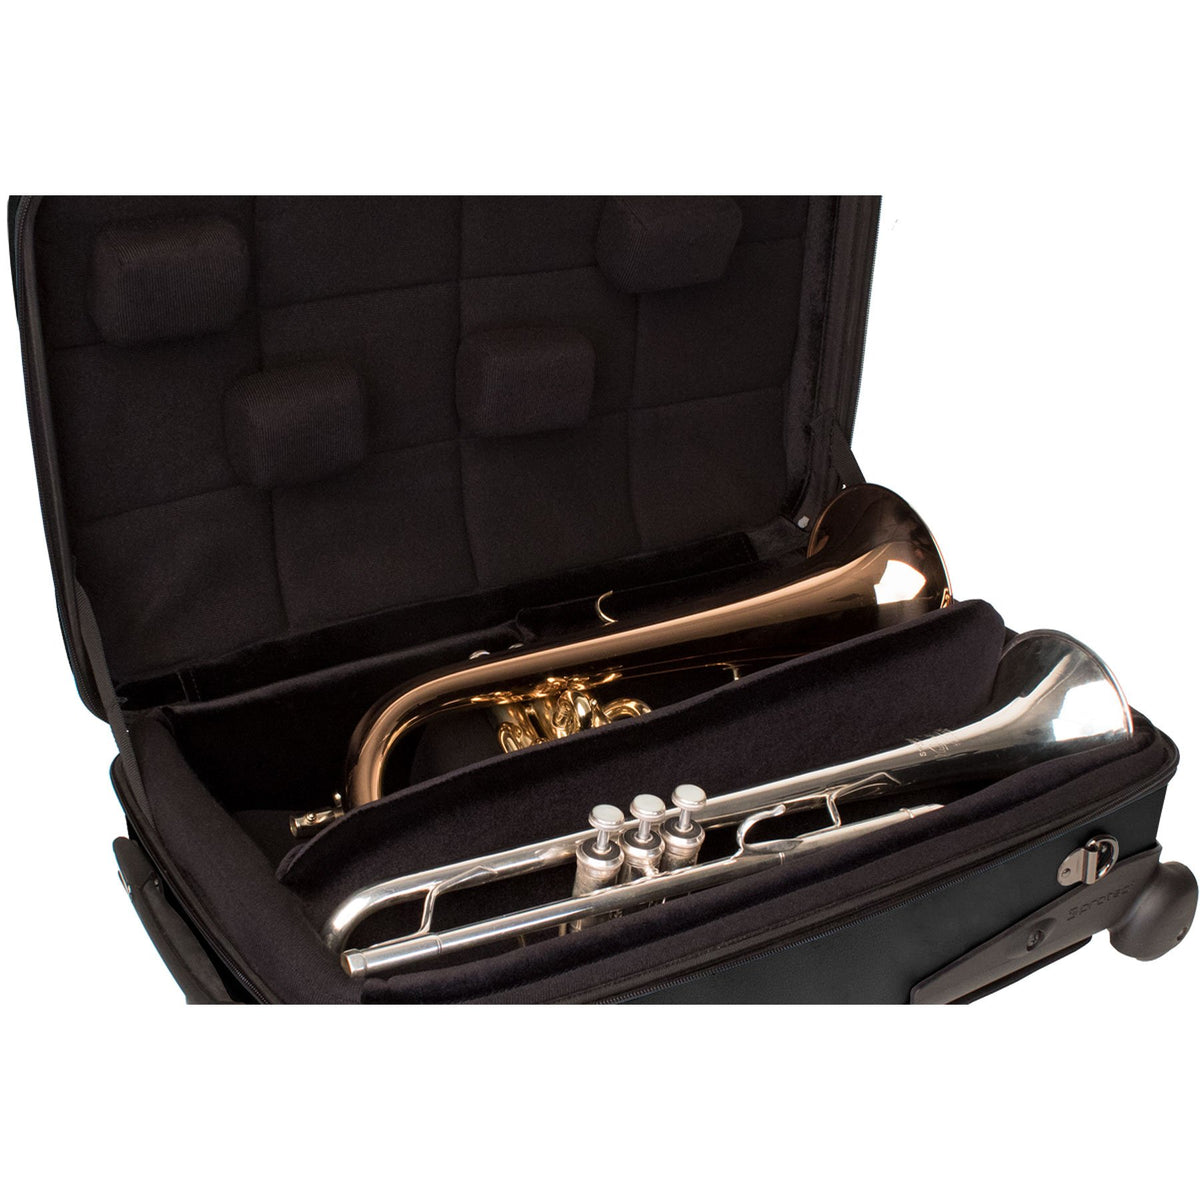 Protec - Single/Double/Triple Horn ZIP Case (Trumpet/Flugelhorn)-Case-Protec-Music Elements